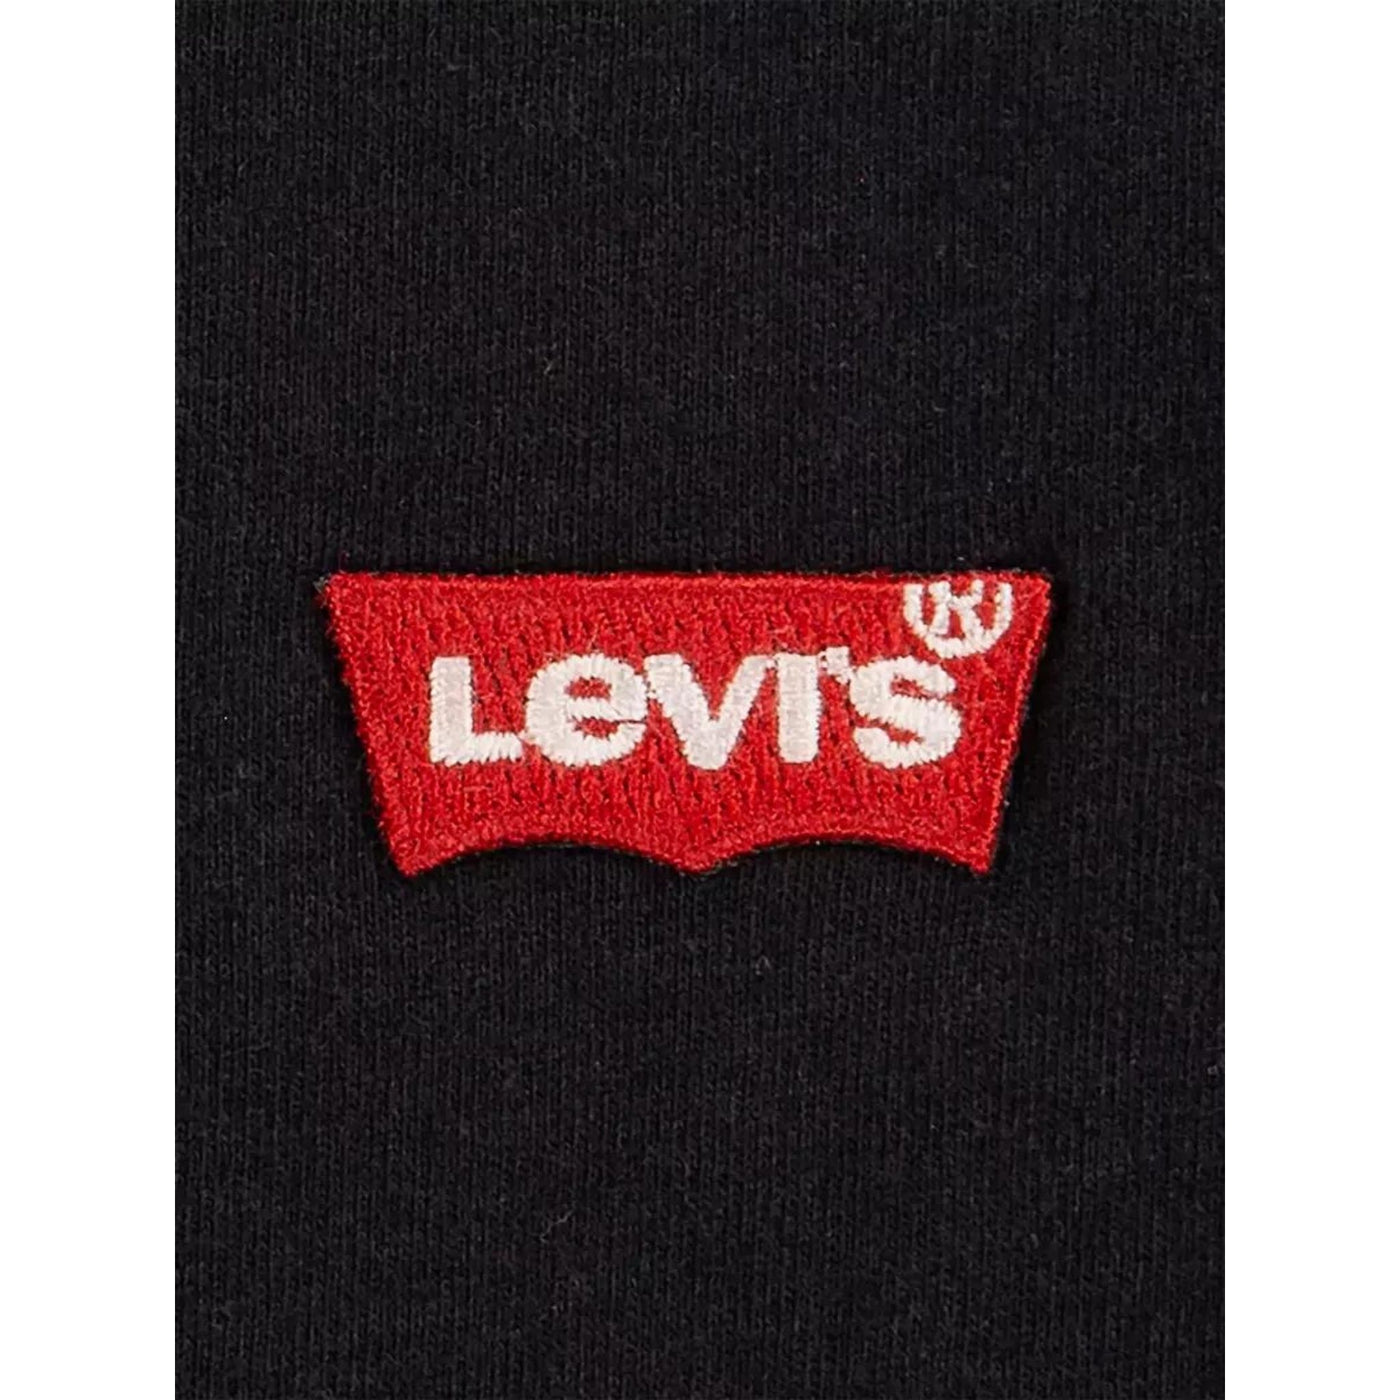 T-shirt bambino nera firmata Levi's dettaglio logo sul petto